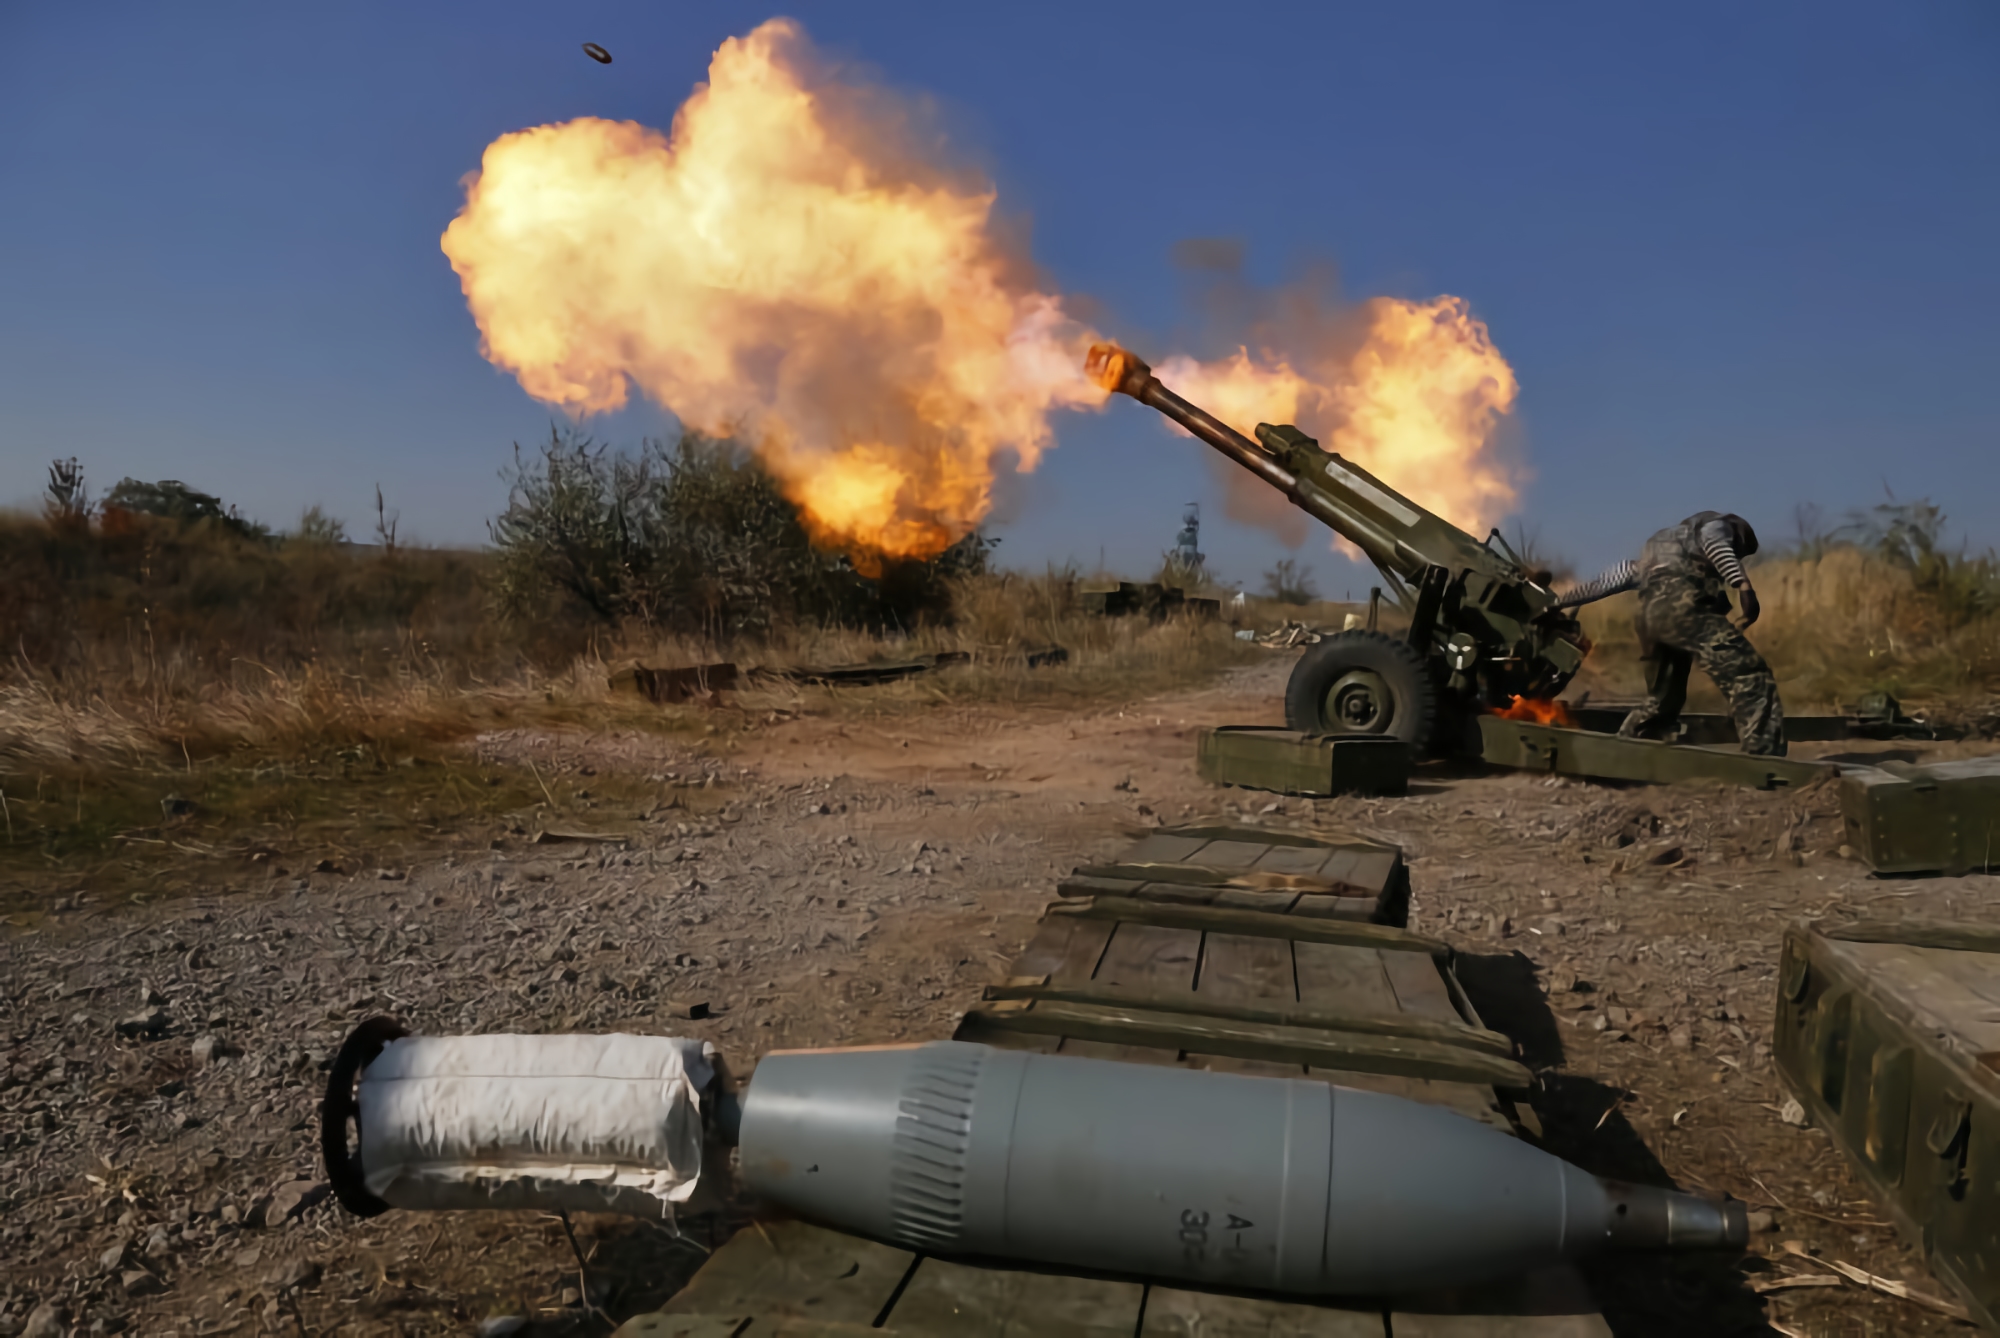 AFU vernichtet seltenes sowjetisches Nona-K-Artilleriesystem und Munition (Video)